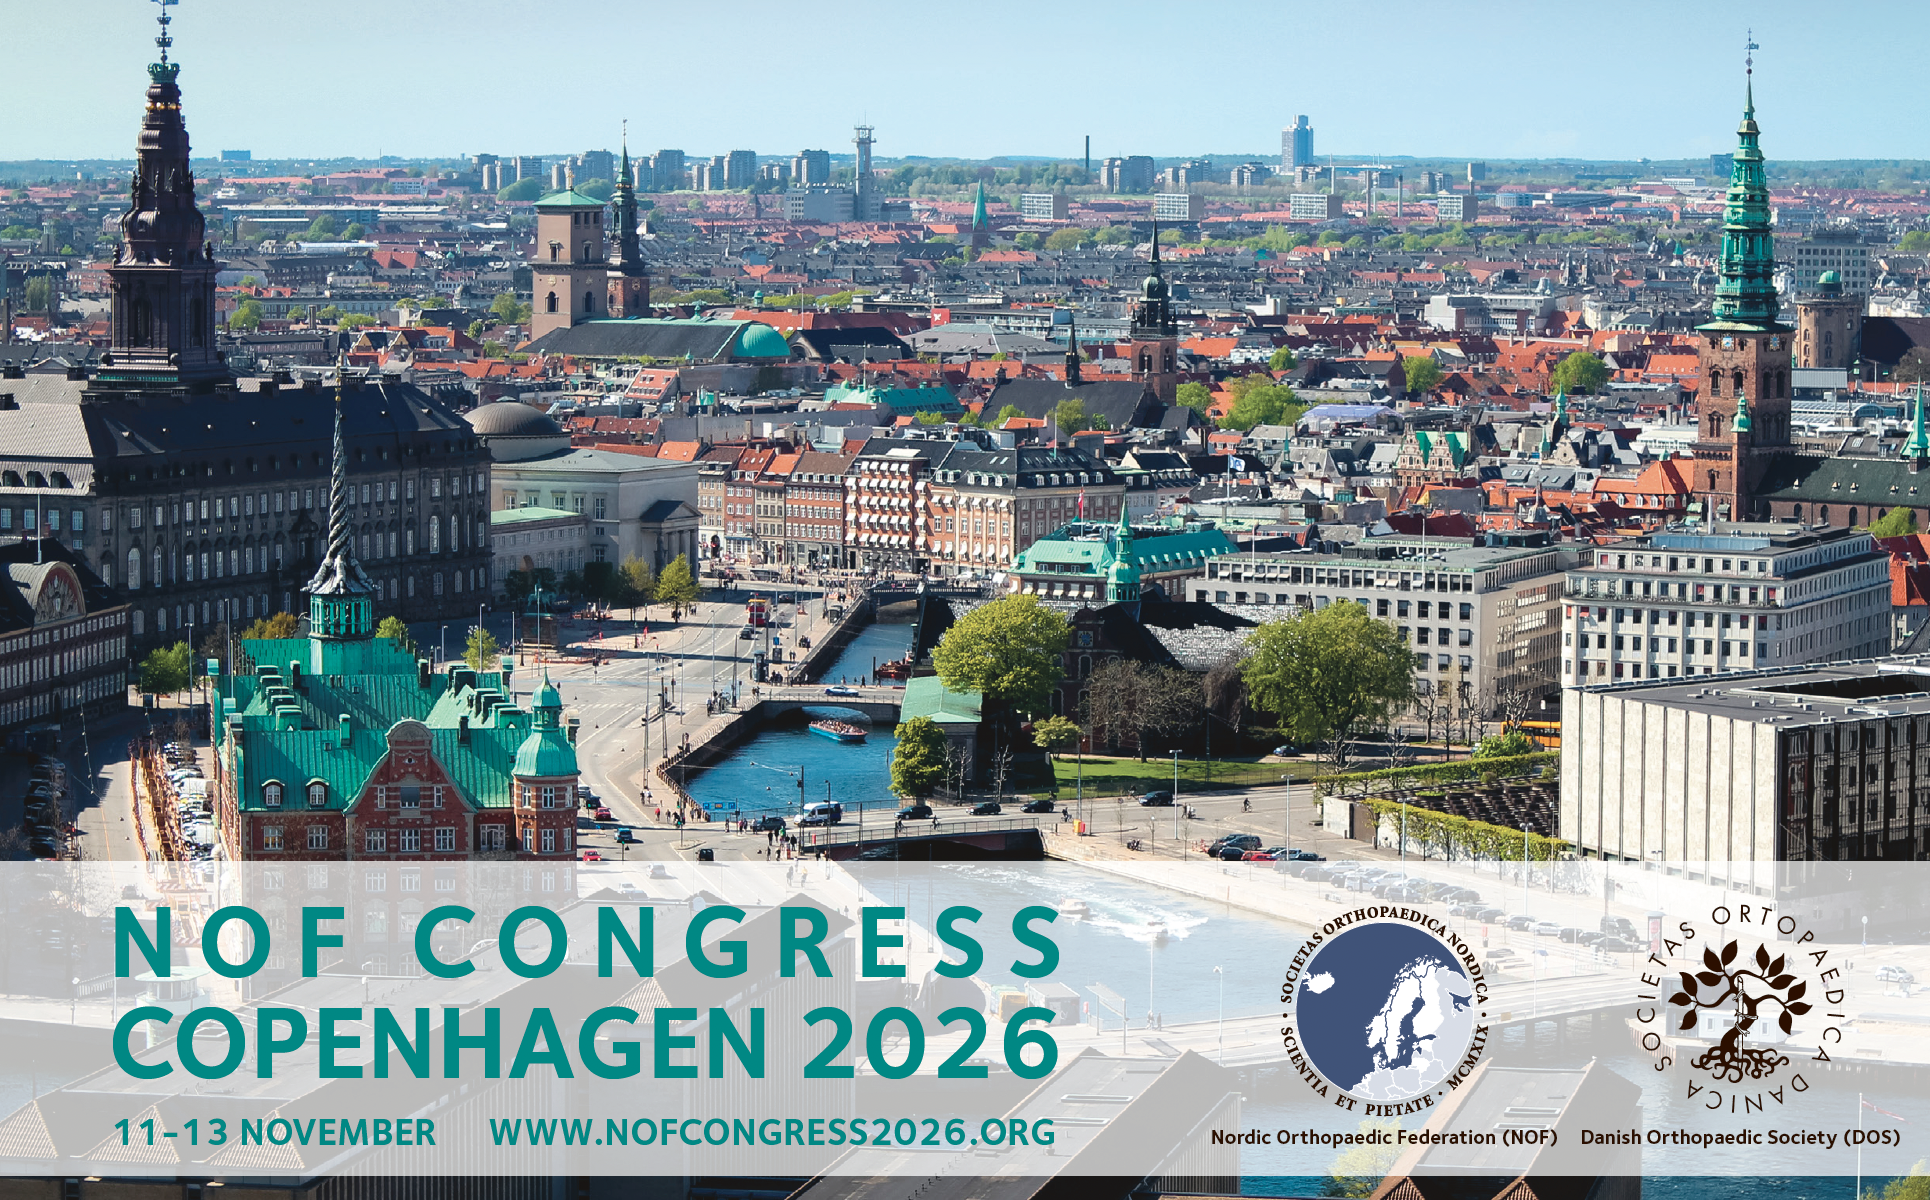 NOF Congress 2026 Copenhagen